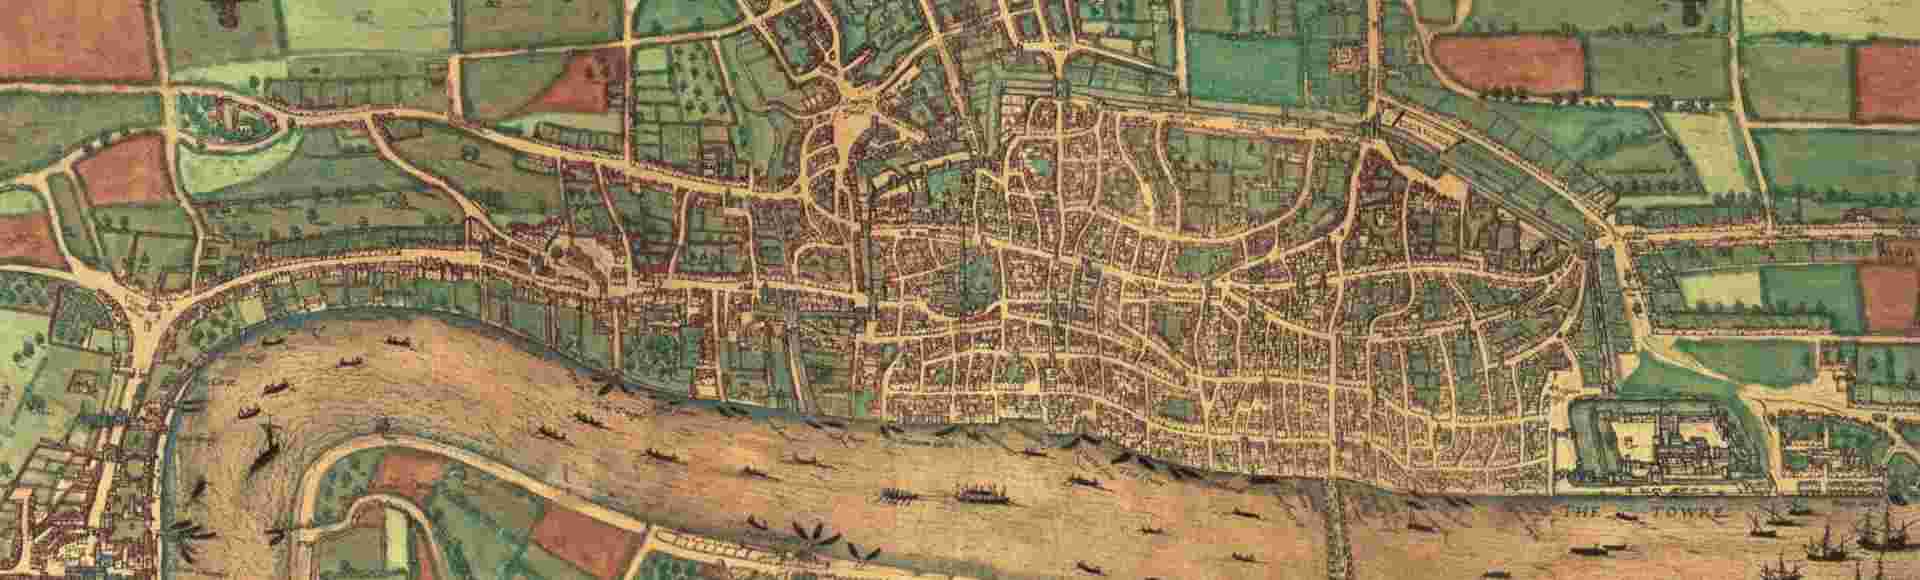 Earliest printed map of London, 1574.